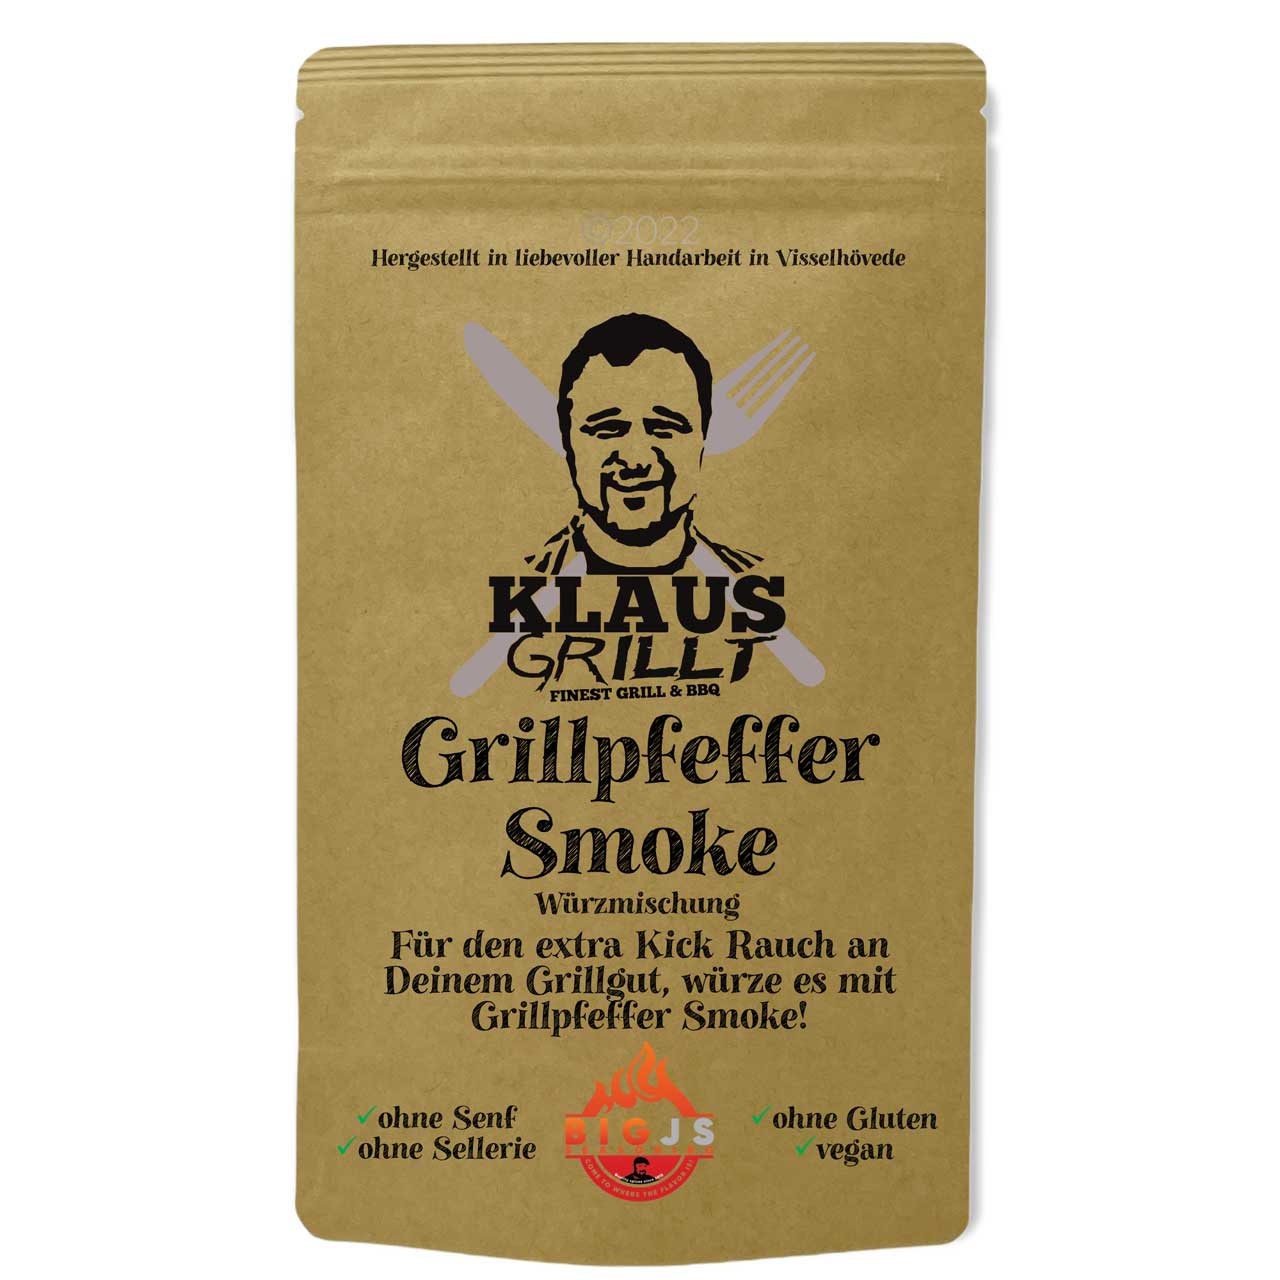 Klaus Grillt Grillpfeffer Smoke, 250 g Beutel